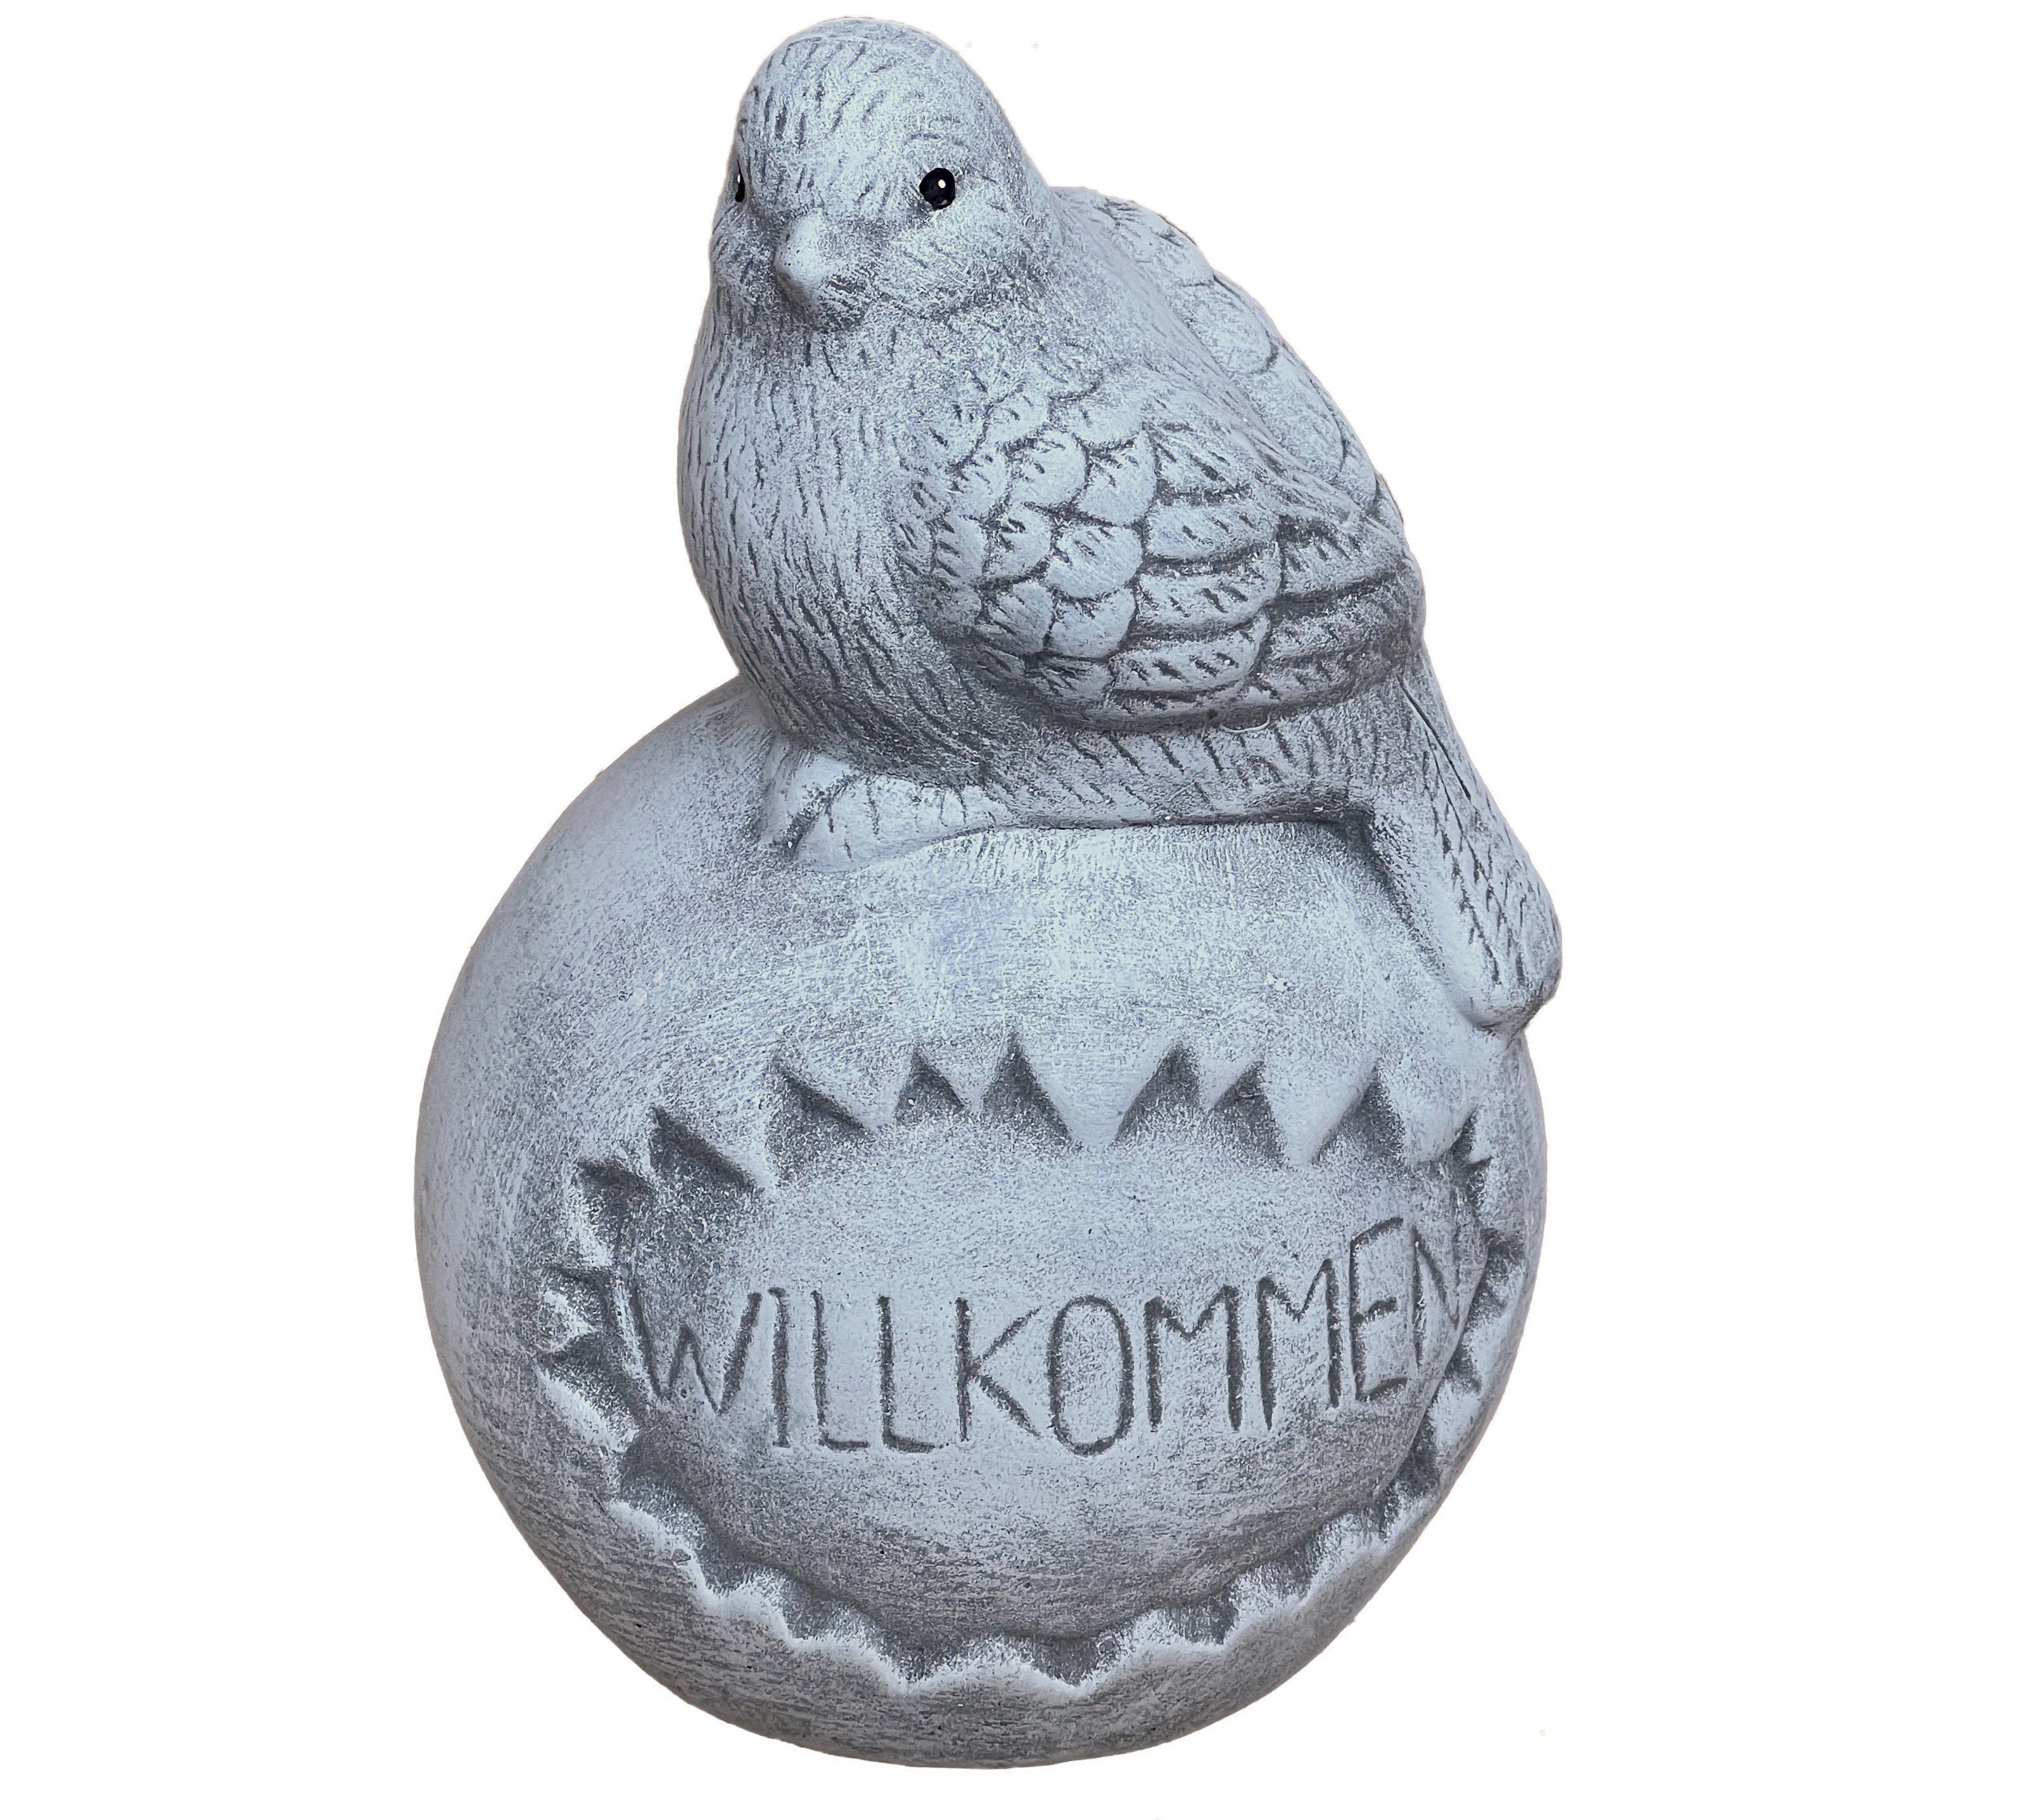 Stone "Willkommen", Gartenfigur auf Steinguss Steinfigur Vogel Kugel frostfest and Style